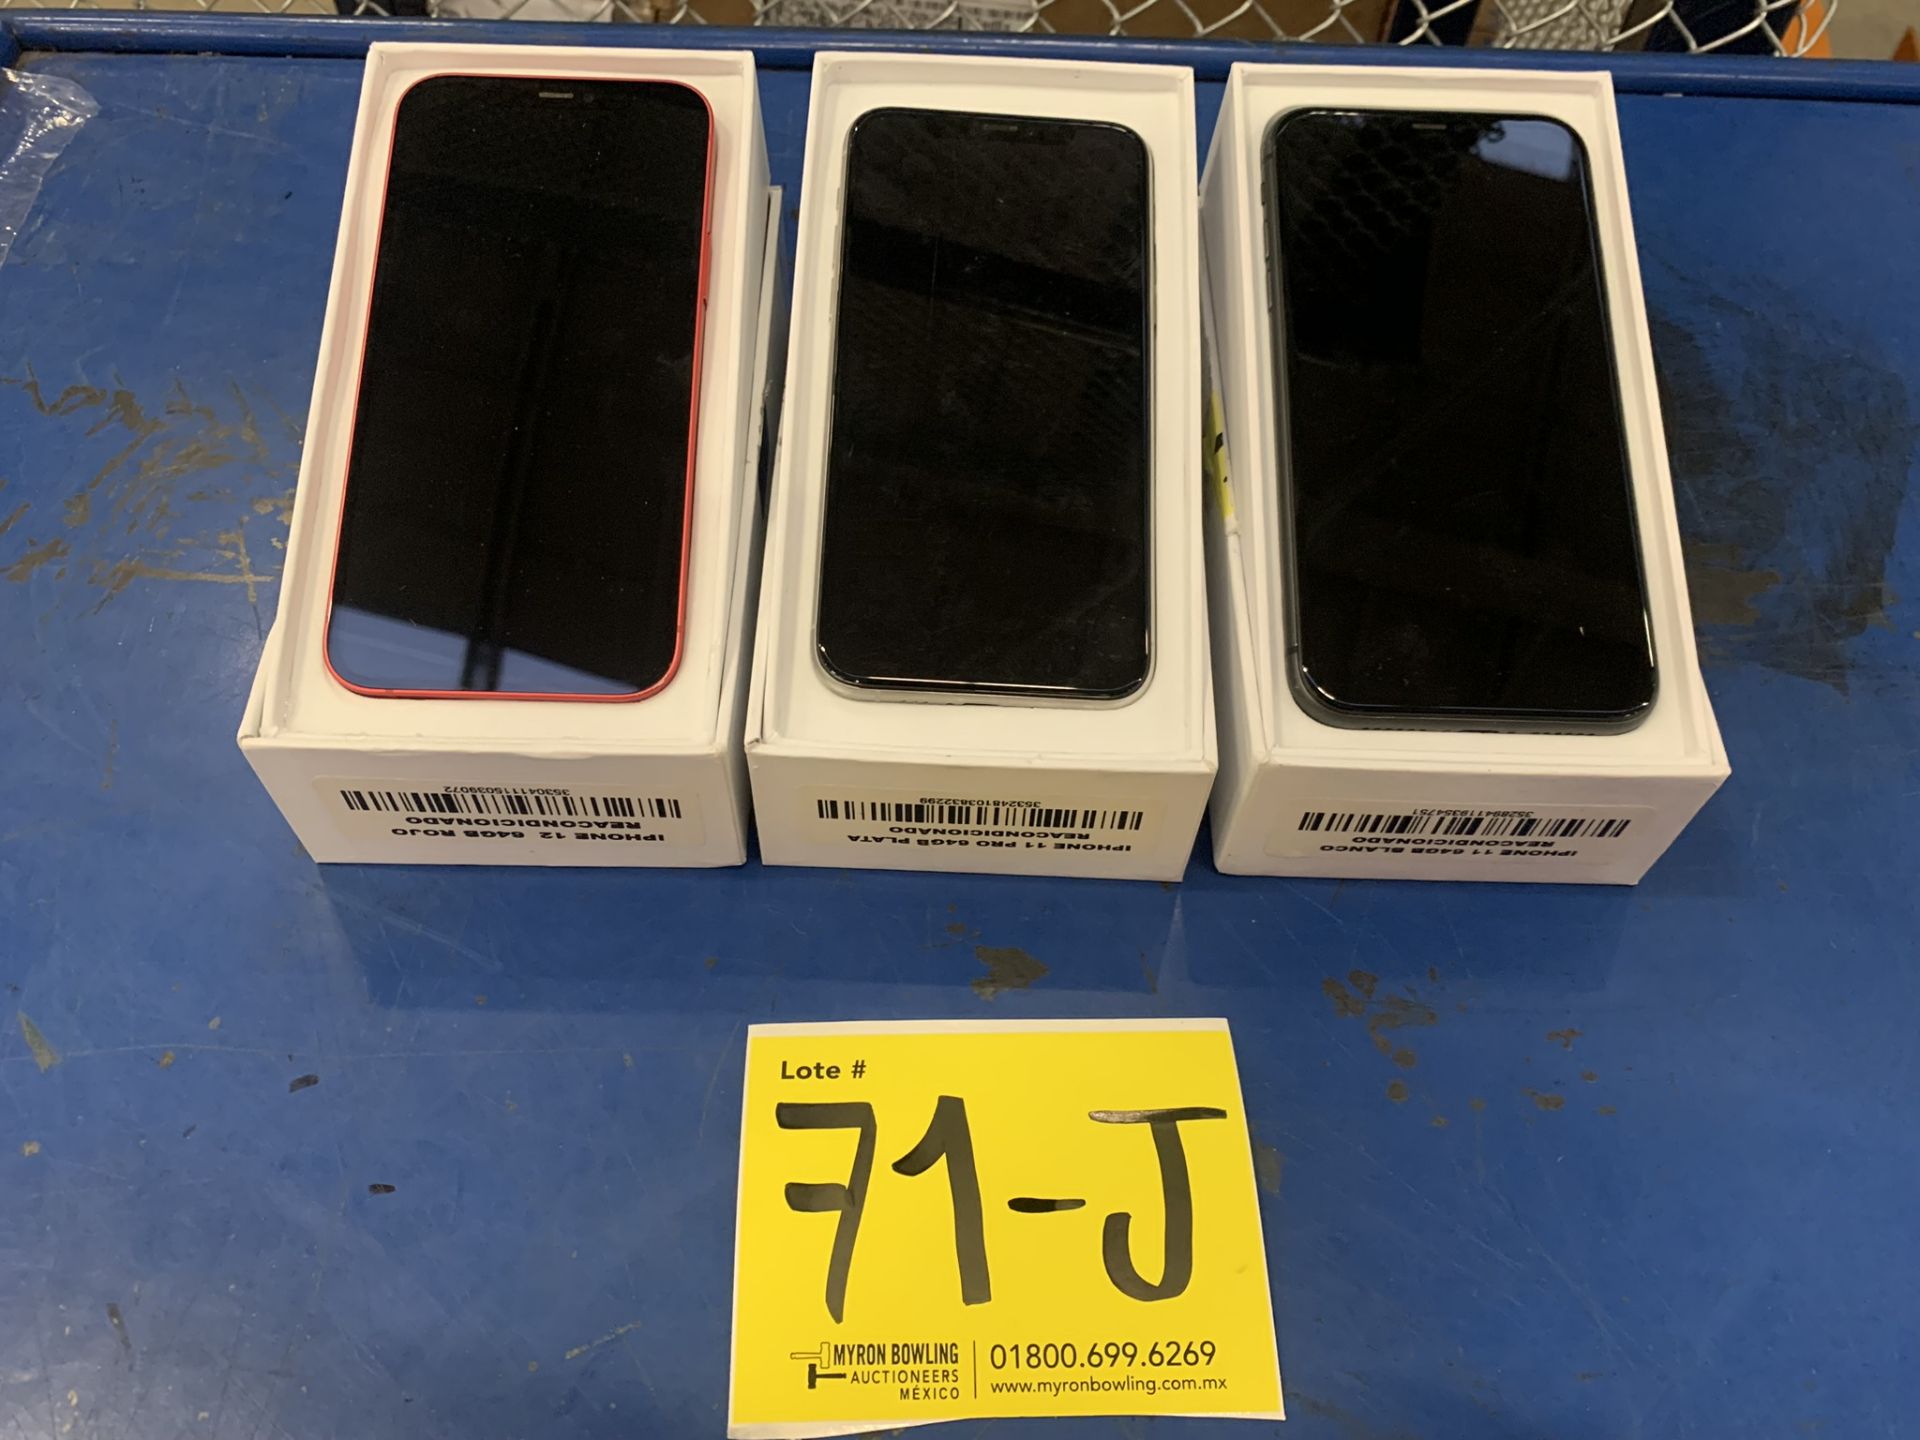 Lote De 3 Teléfonos Celular Contiene: 1 Iphone Marca Apple, Modelo 12, Color Rojo, 64 GB De Alm - Image 7 of 9